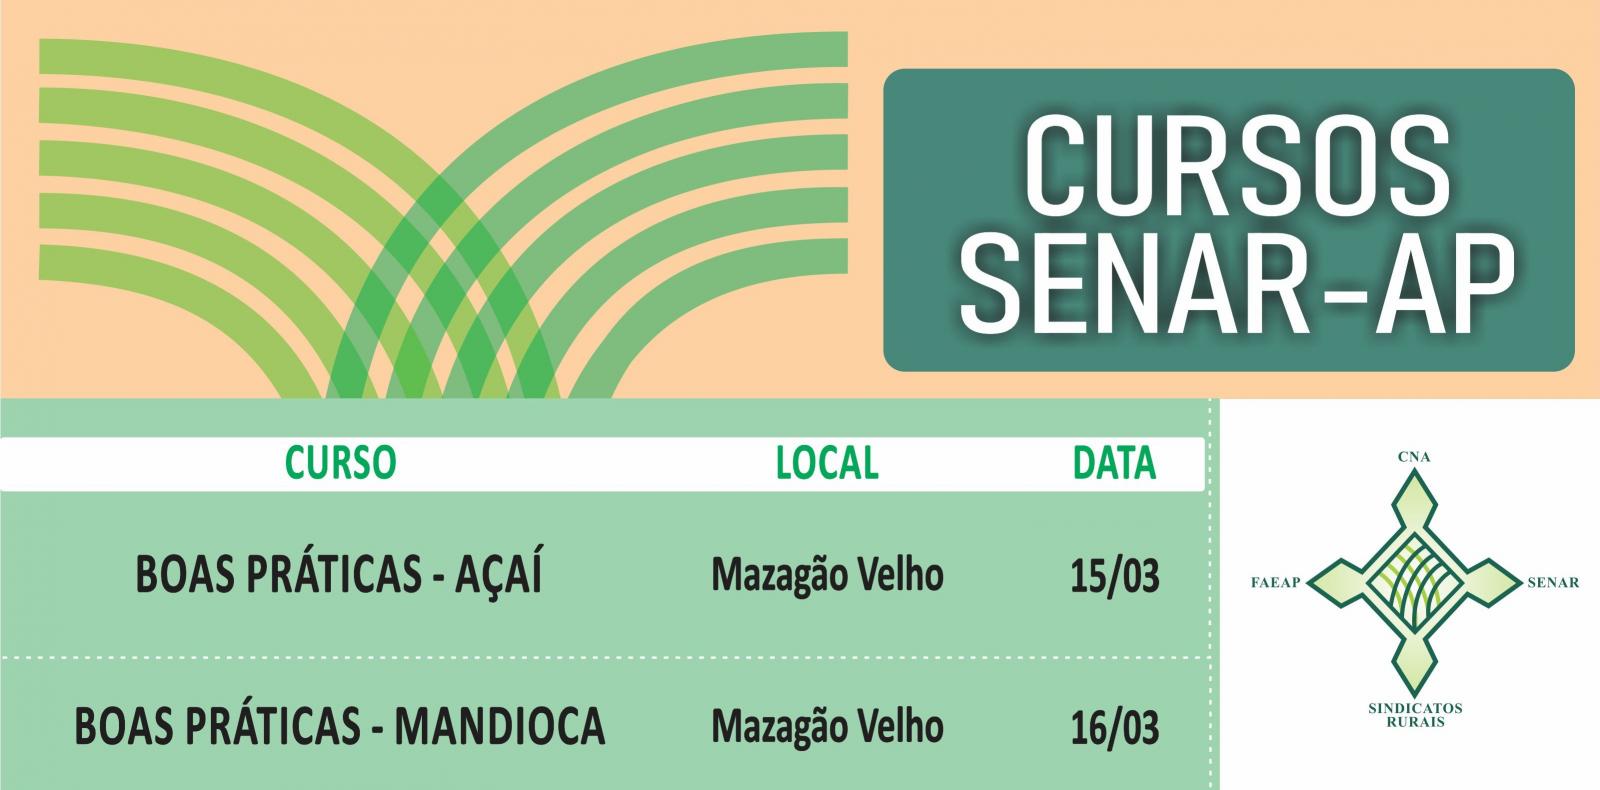 Cursos de manejo do açaí e da mandioca serão ofertados na vila de Mazagão Velho pelo SENAR